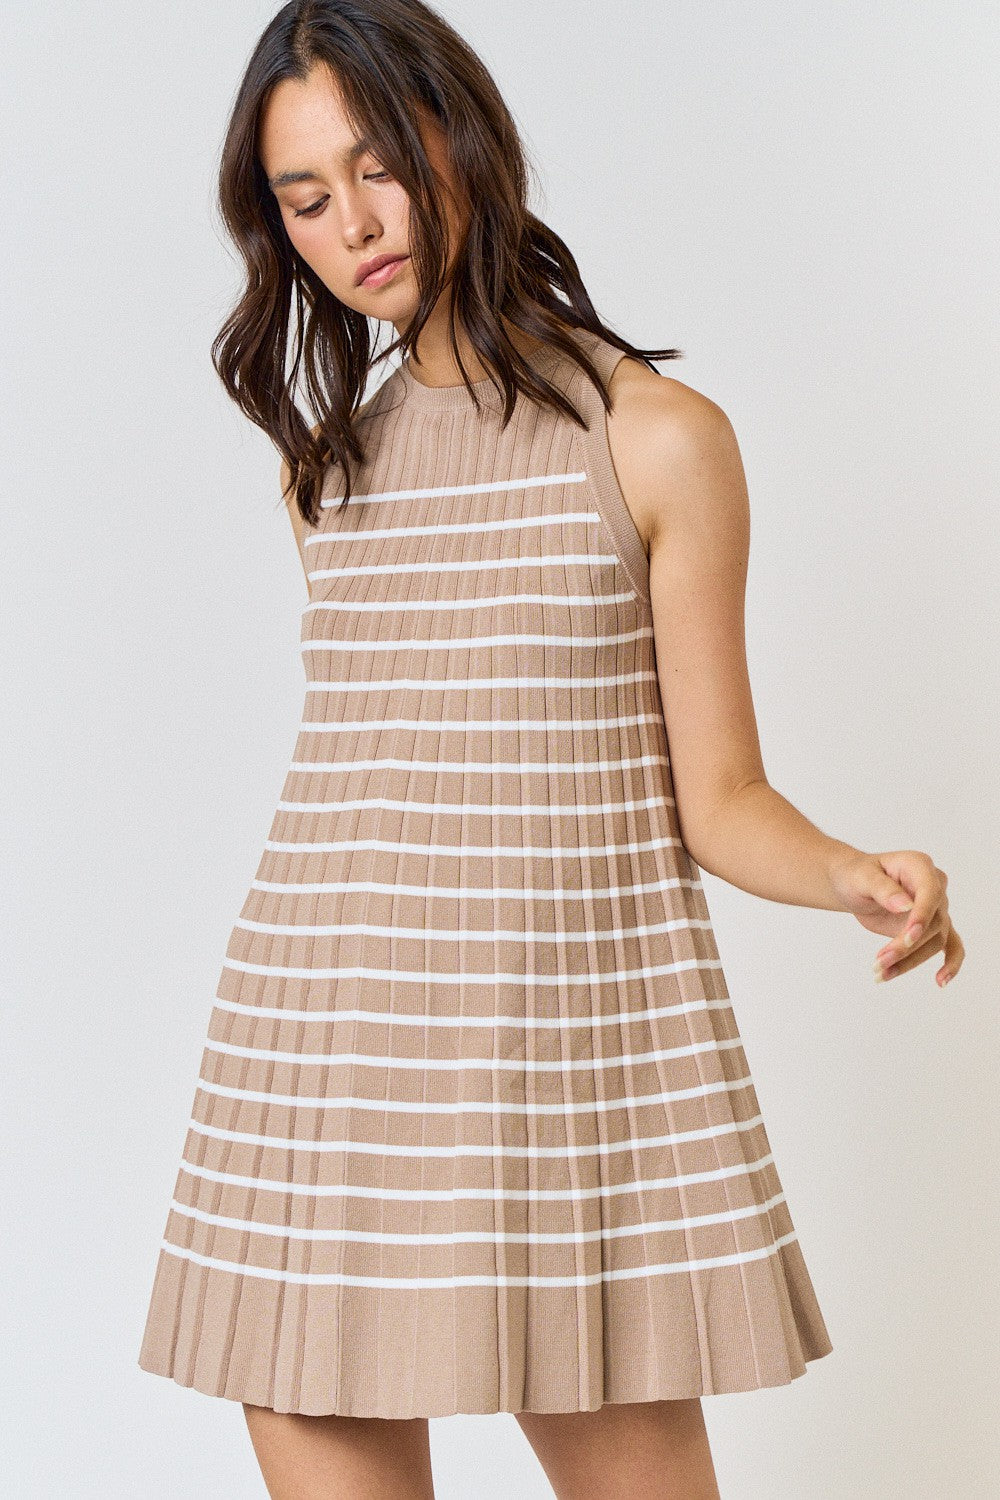 Taylor Striped Mini Dress